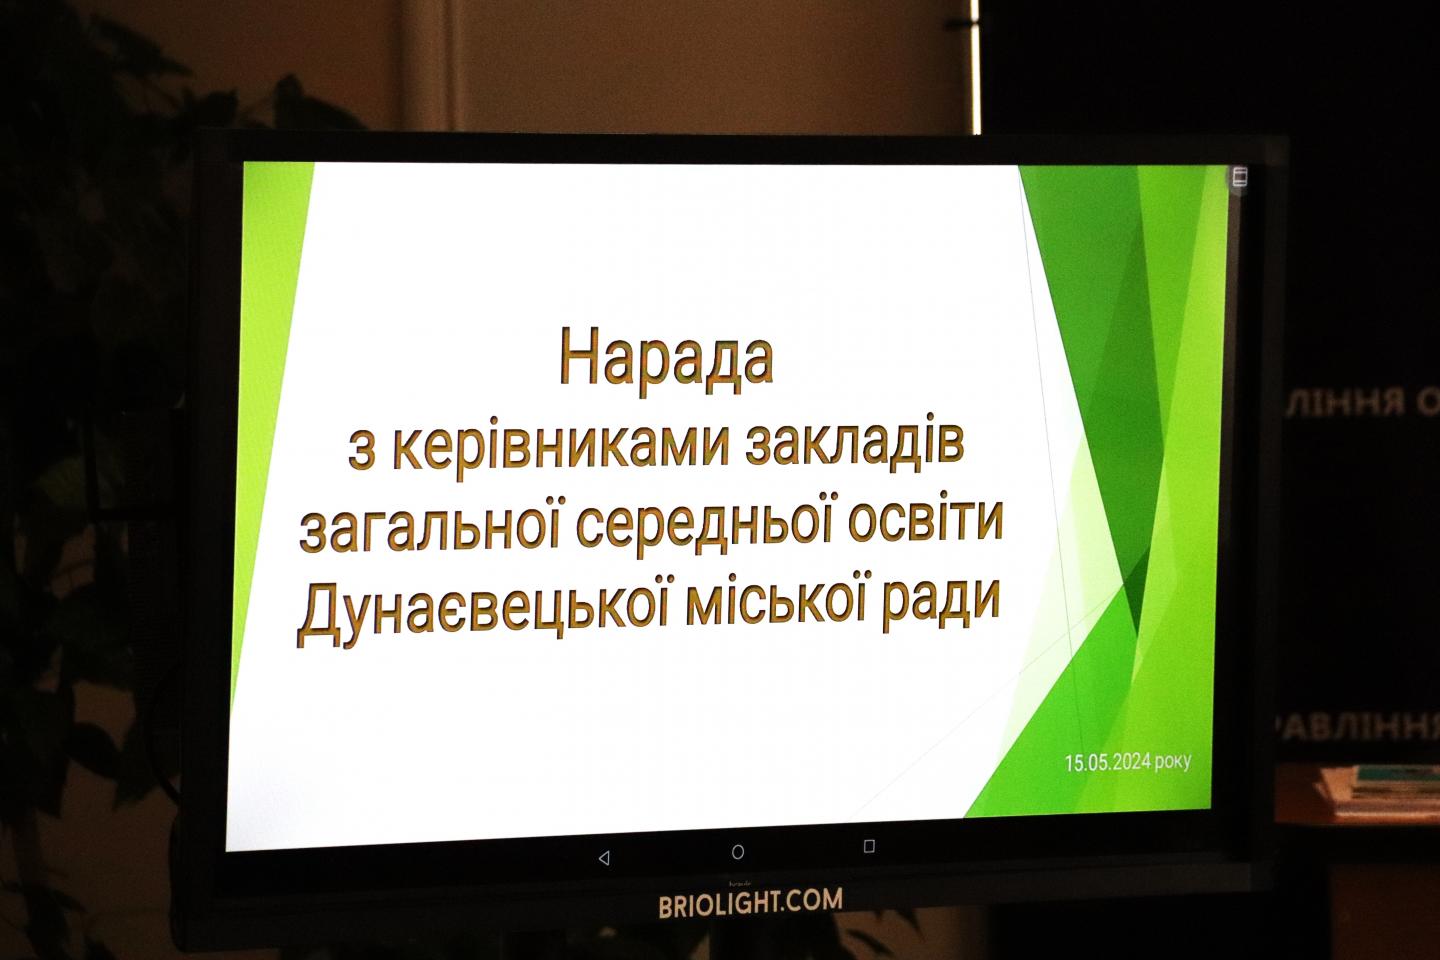 http://dunrada.gov.ua/uploadfile/archive_news/2024/05/15/2024-05-15_9683/images/images-24209.jpg